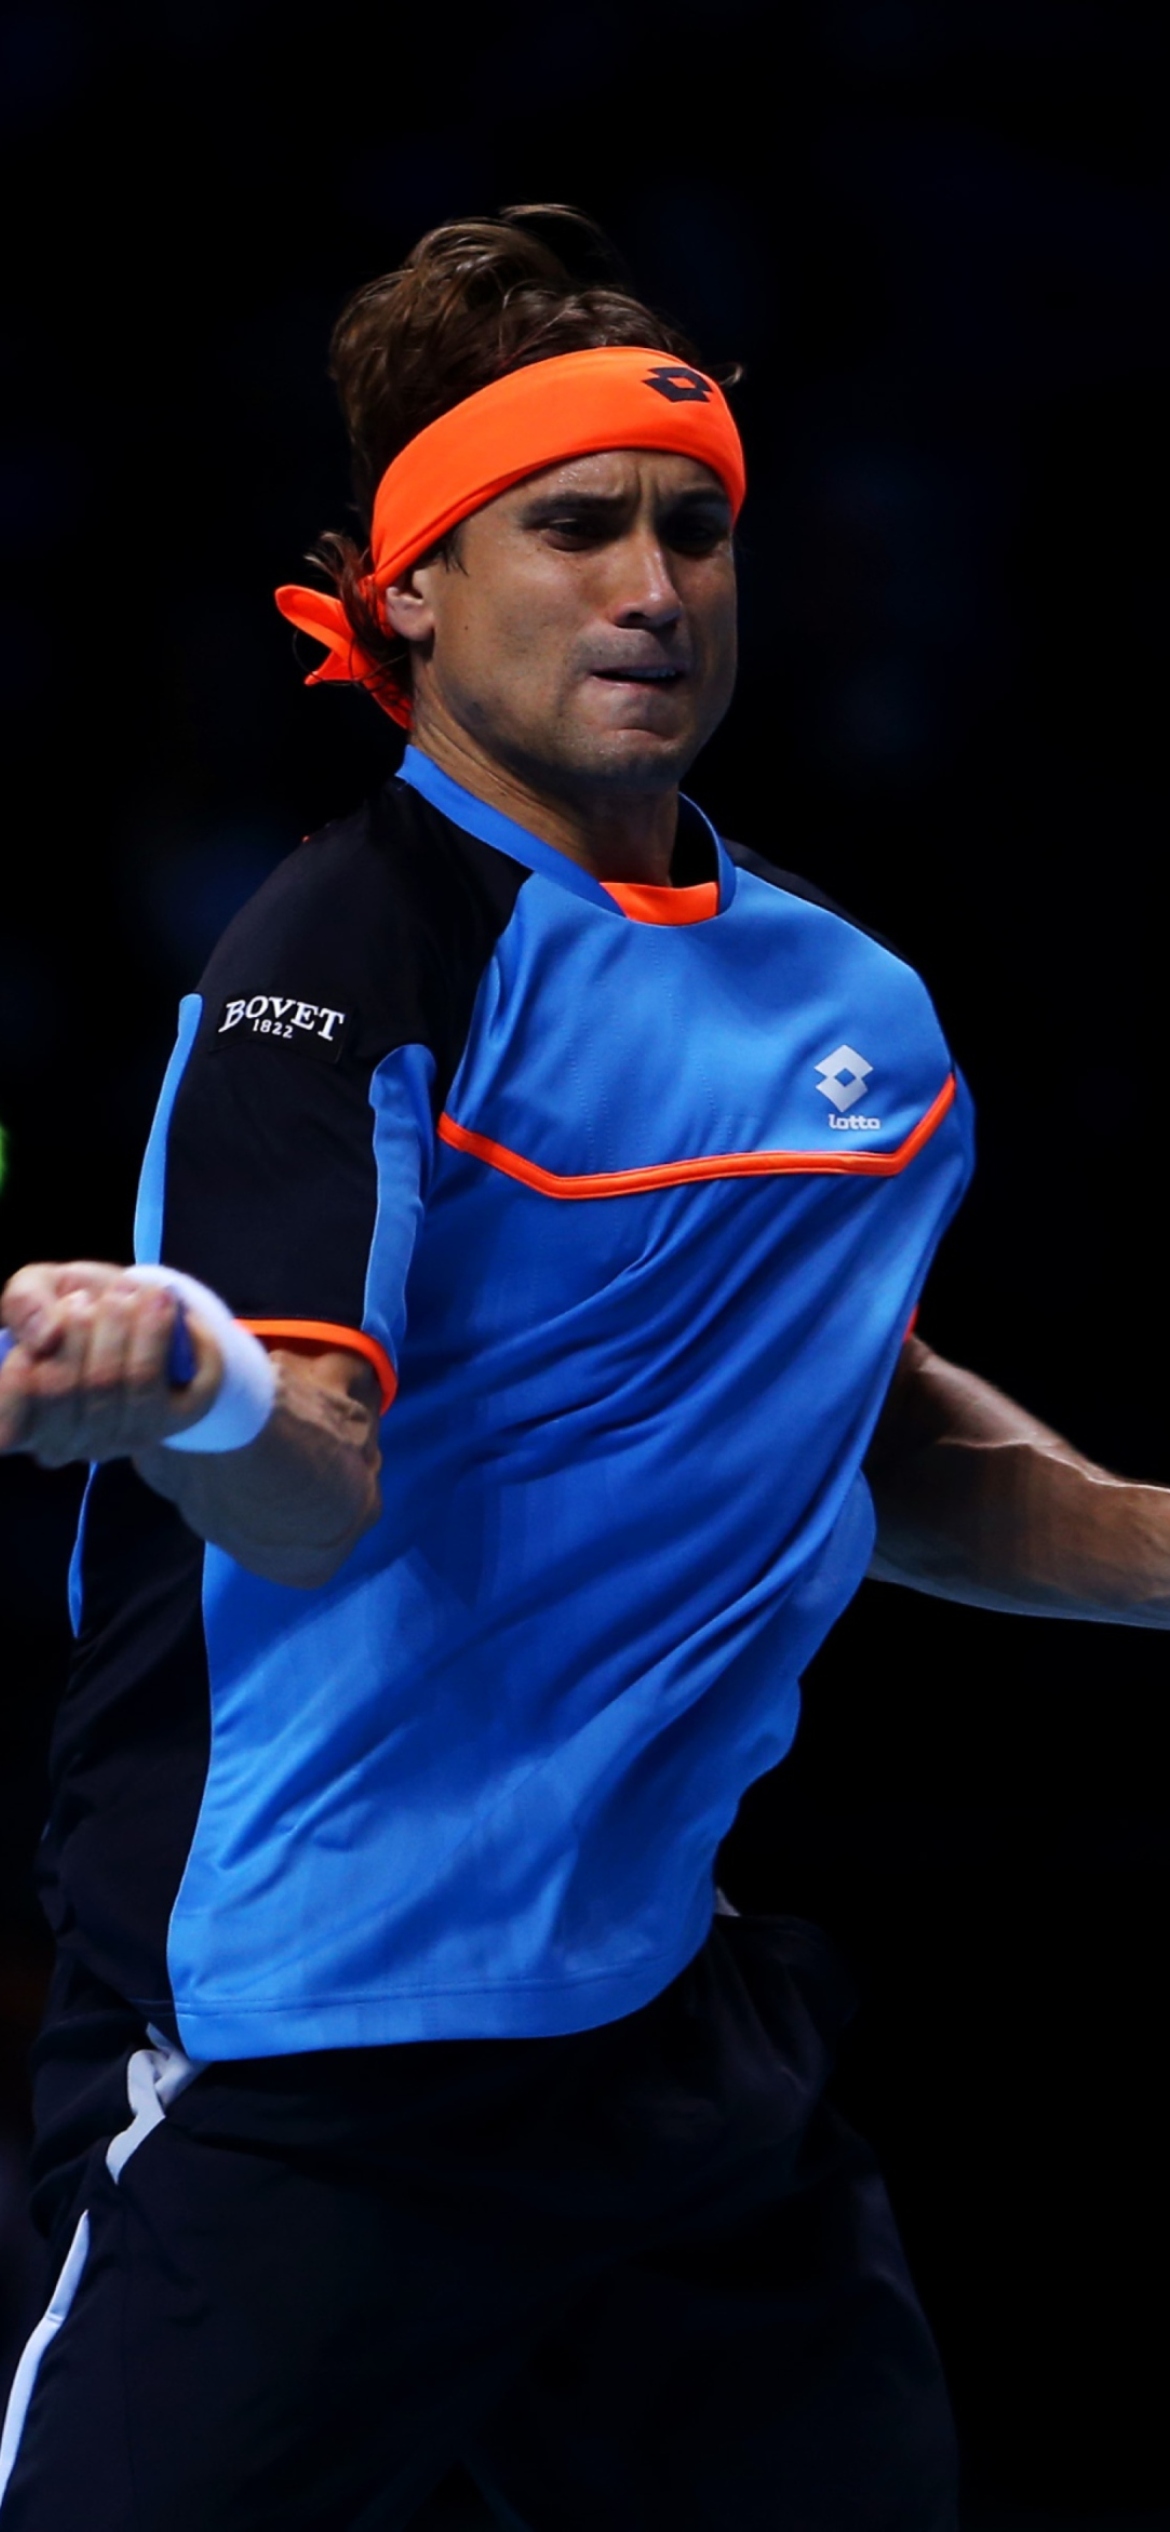 Tennis Player - David Ferrer screenshot #1 1170x2532